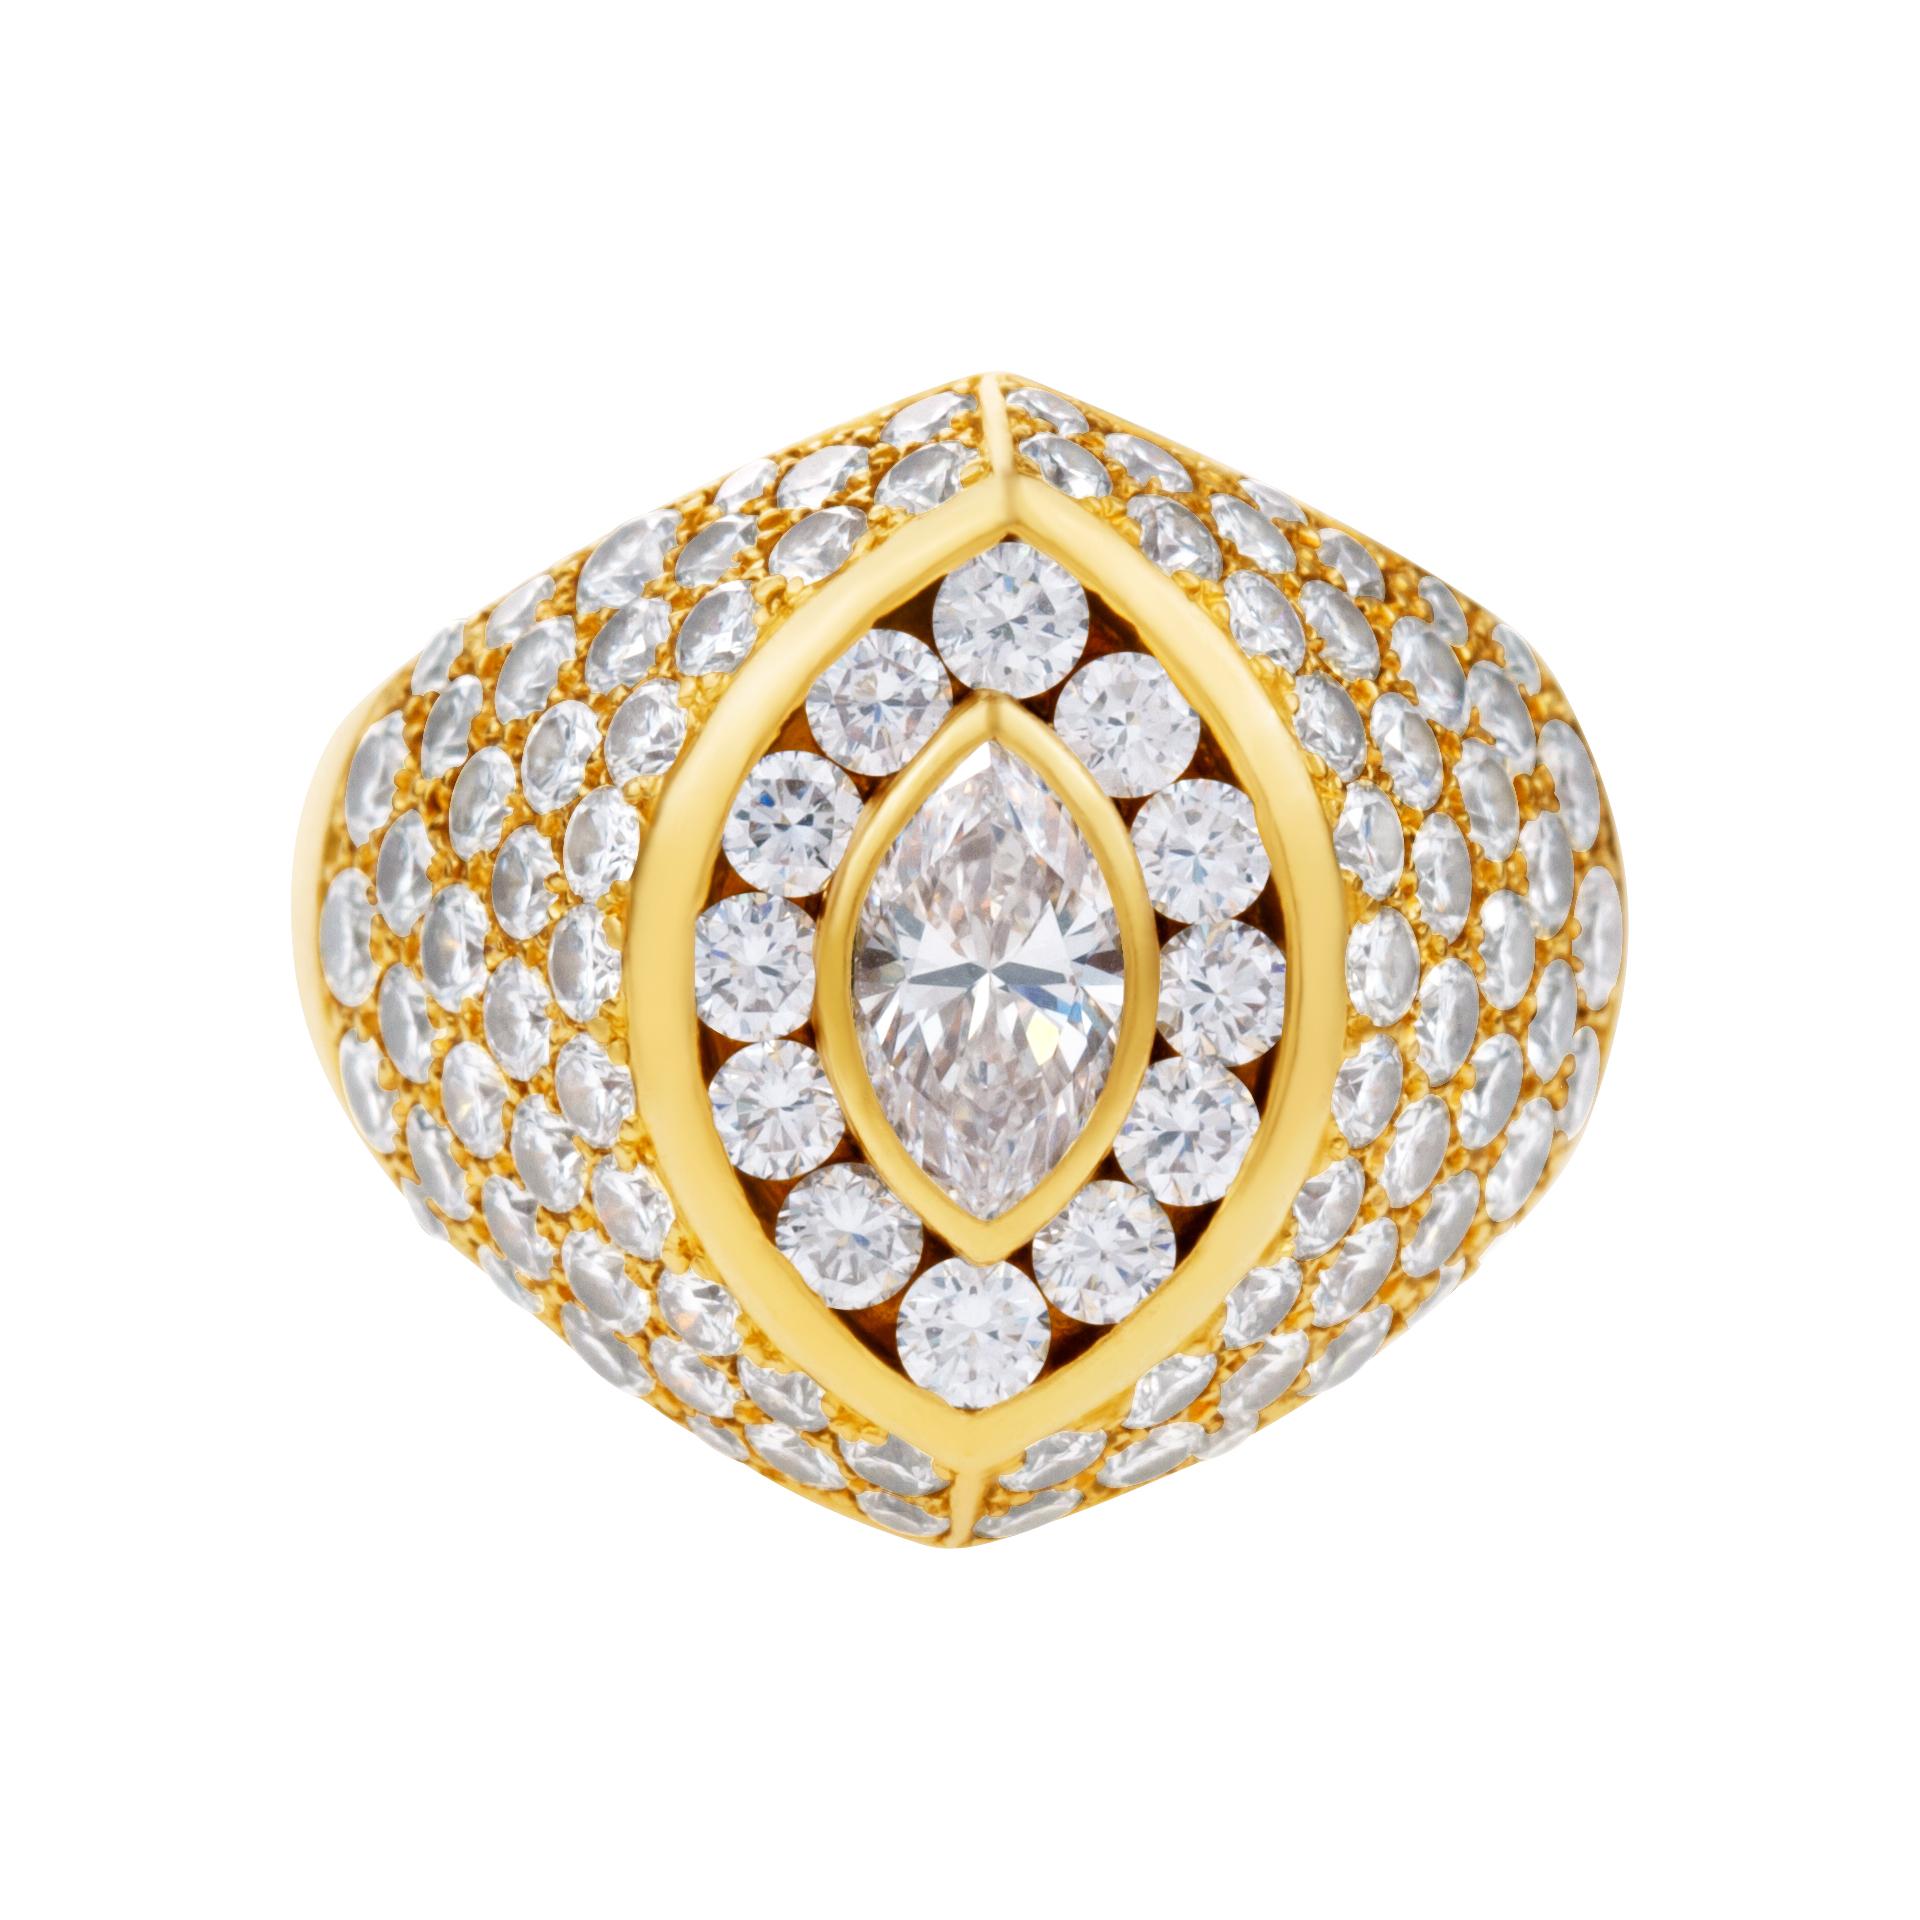 Bague Kutchinsky en or jaune 18 carats pavée de diamants avec au centre un diamant marquise de 0,50 carat pour un total de 4 carats de couleur E-F et de pureté VVS. Cette bague en diamant est actuellement en taille 7.25. Certains articles peuvent